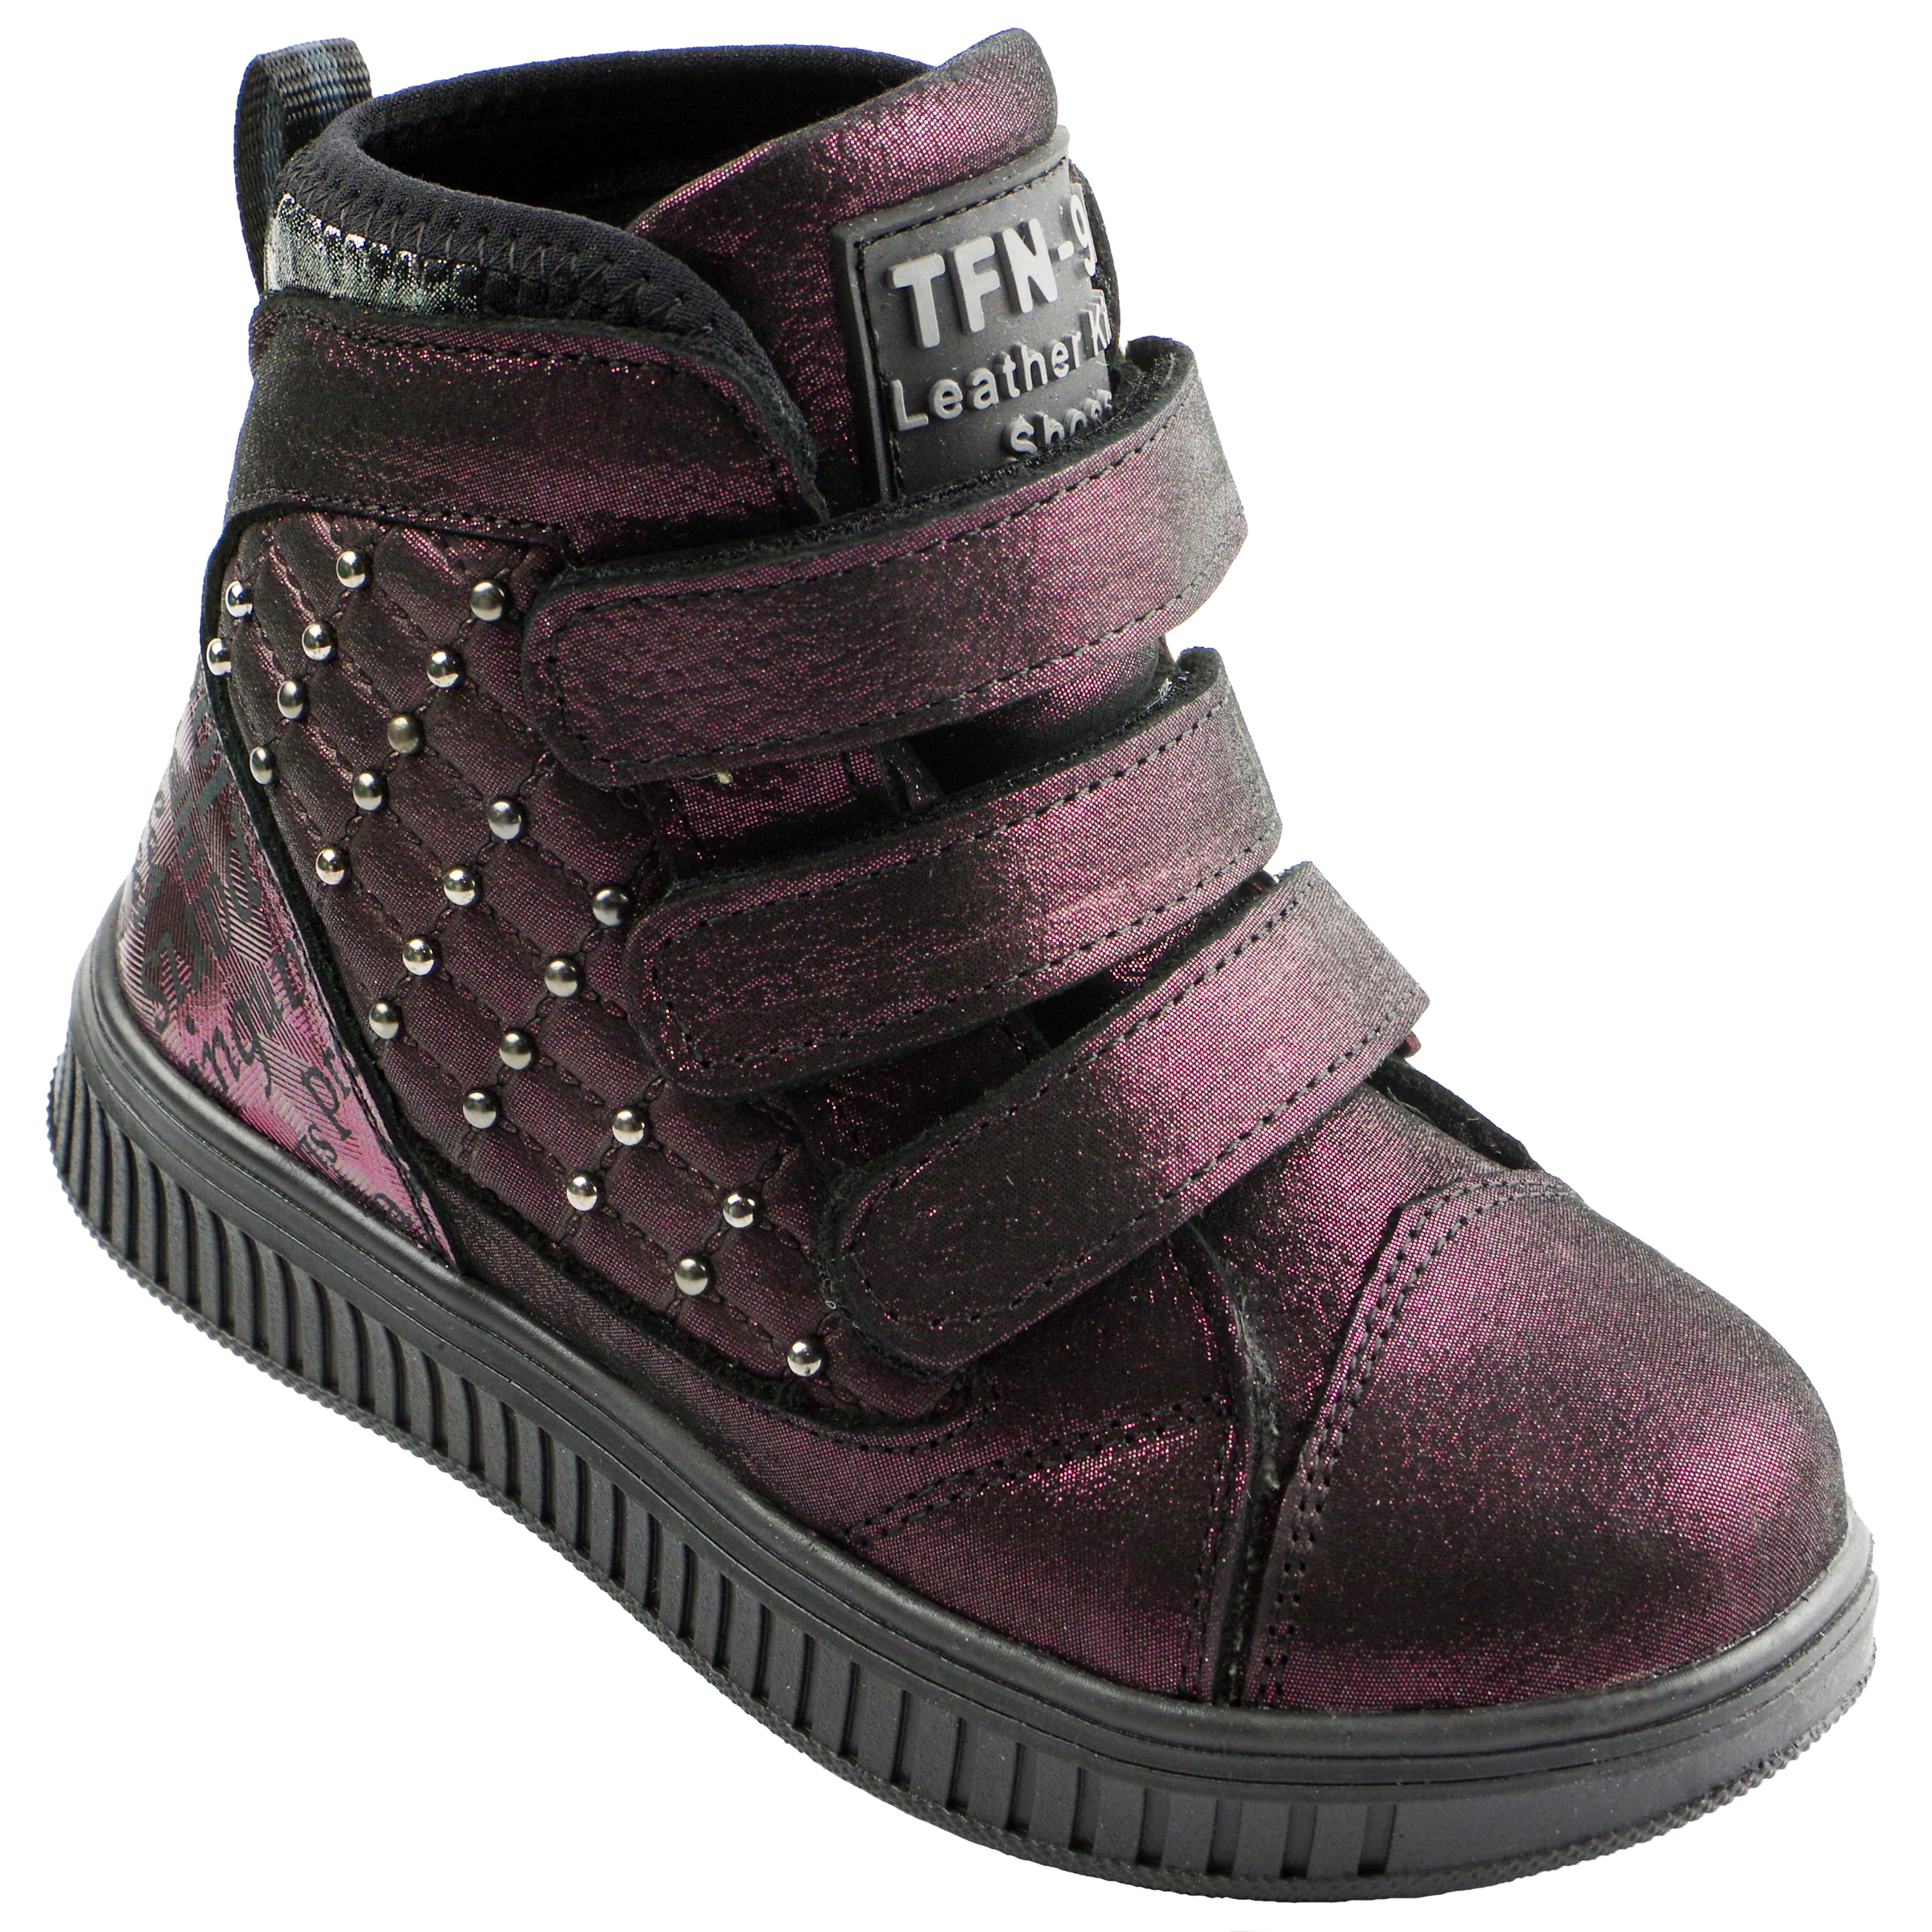 Демисезонные ботинки (2141) материал Натуральная кожа, цвет Фиолетовый  для девочки 26-30 размеры – Sole Kids